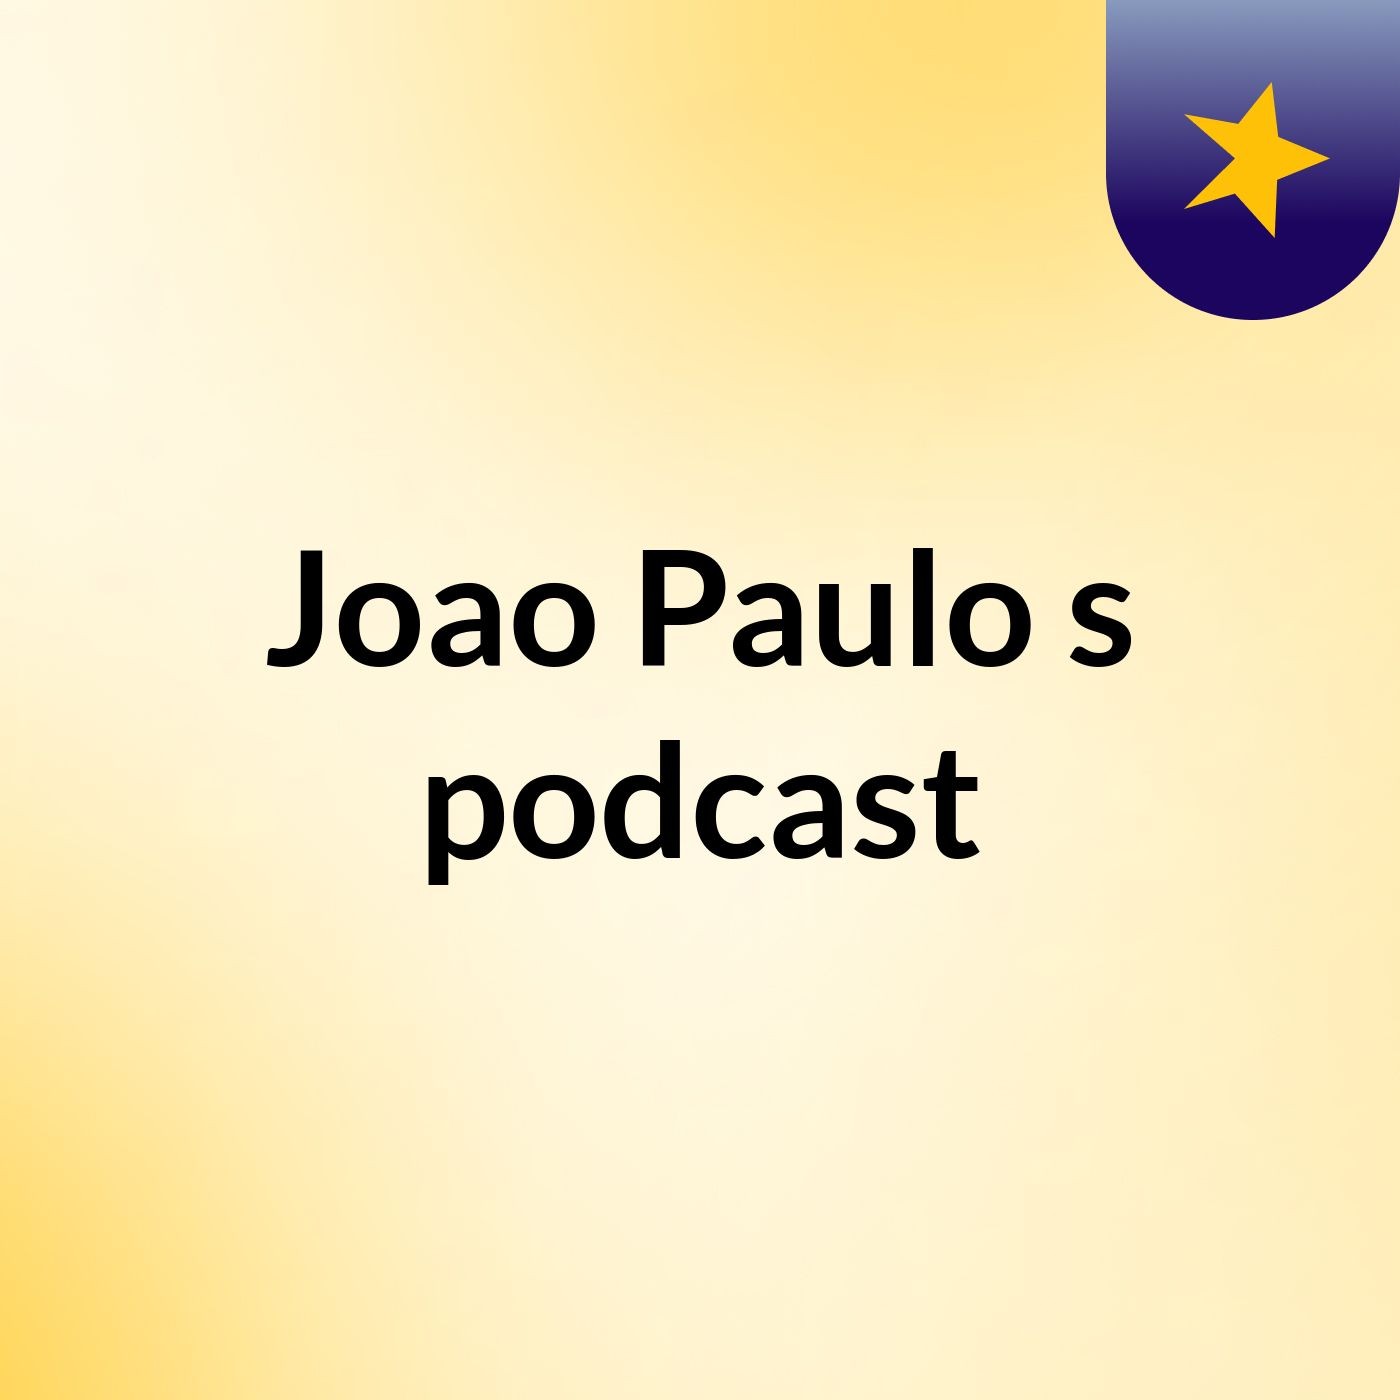 Joao Paulo's podcast